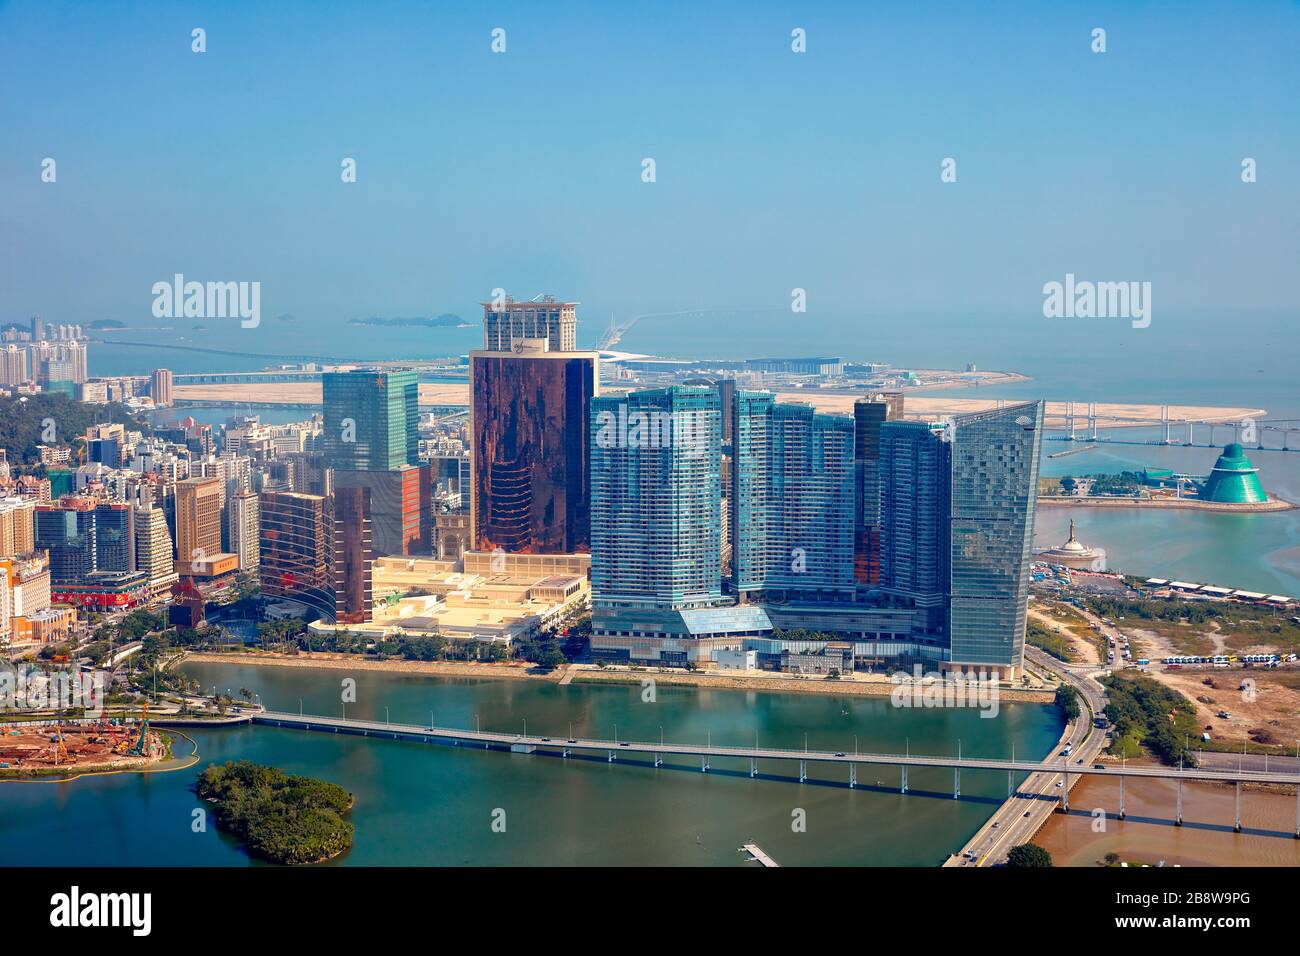 Vue aérienne sur la péninsule de Macao. Macao, Chine. Banque D'Images